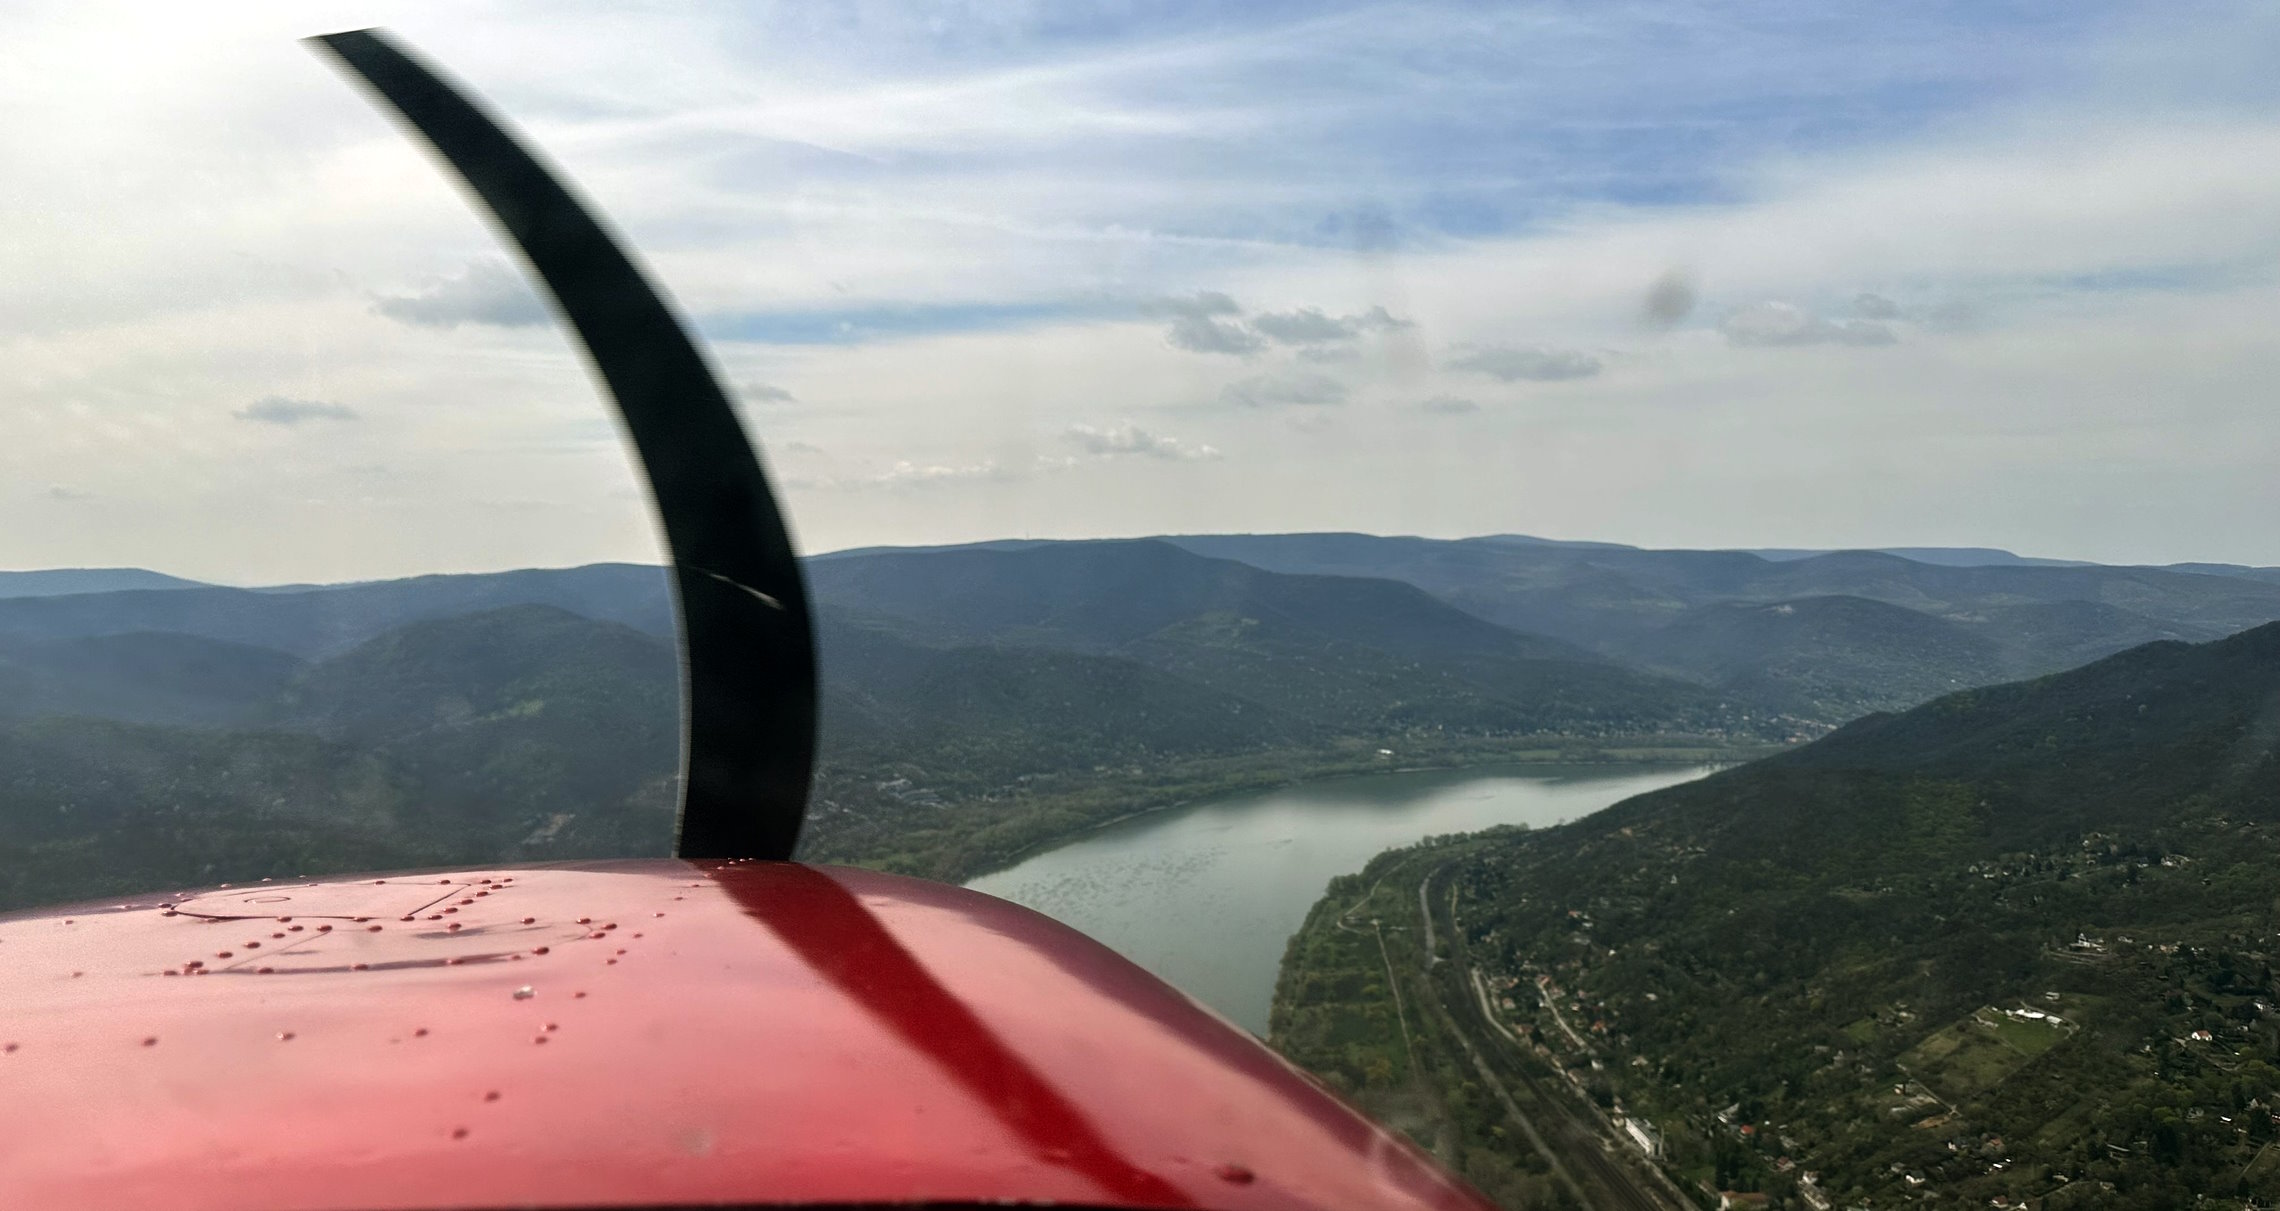 Flying along the Danube